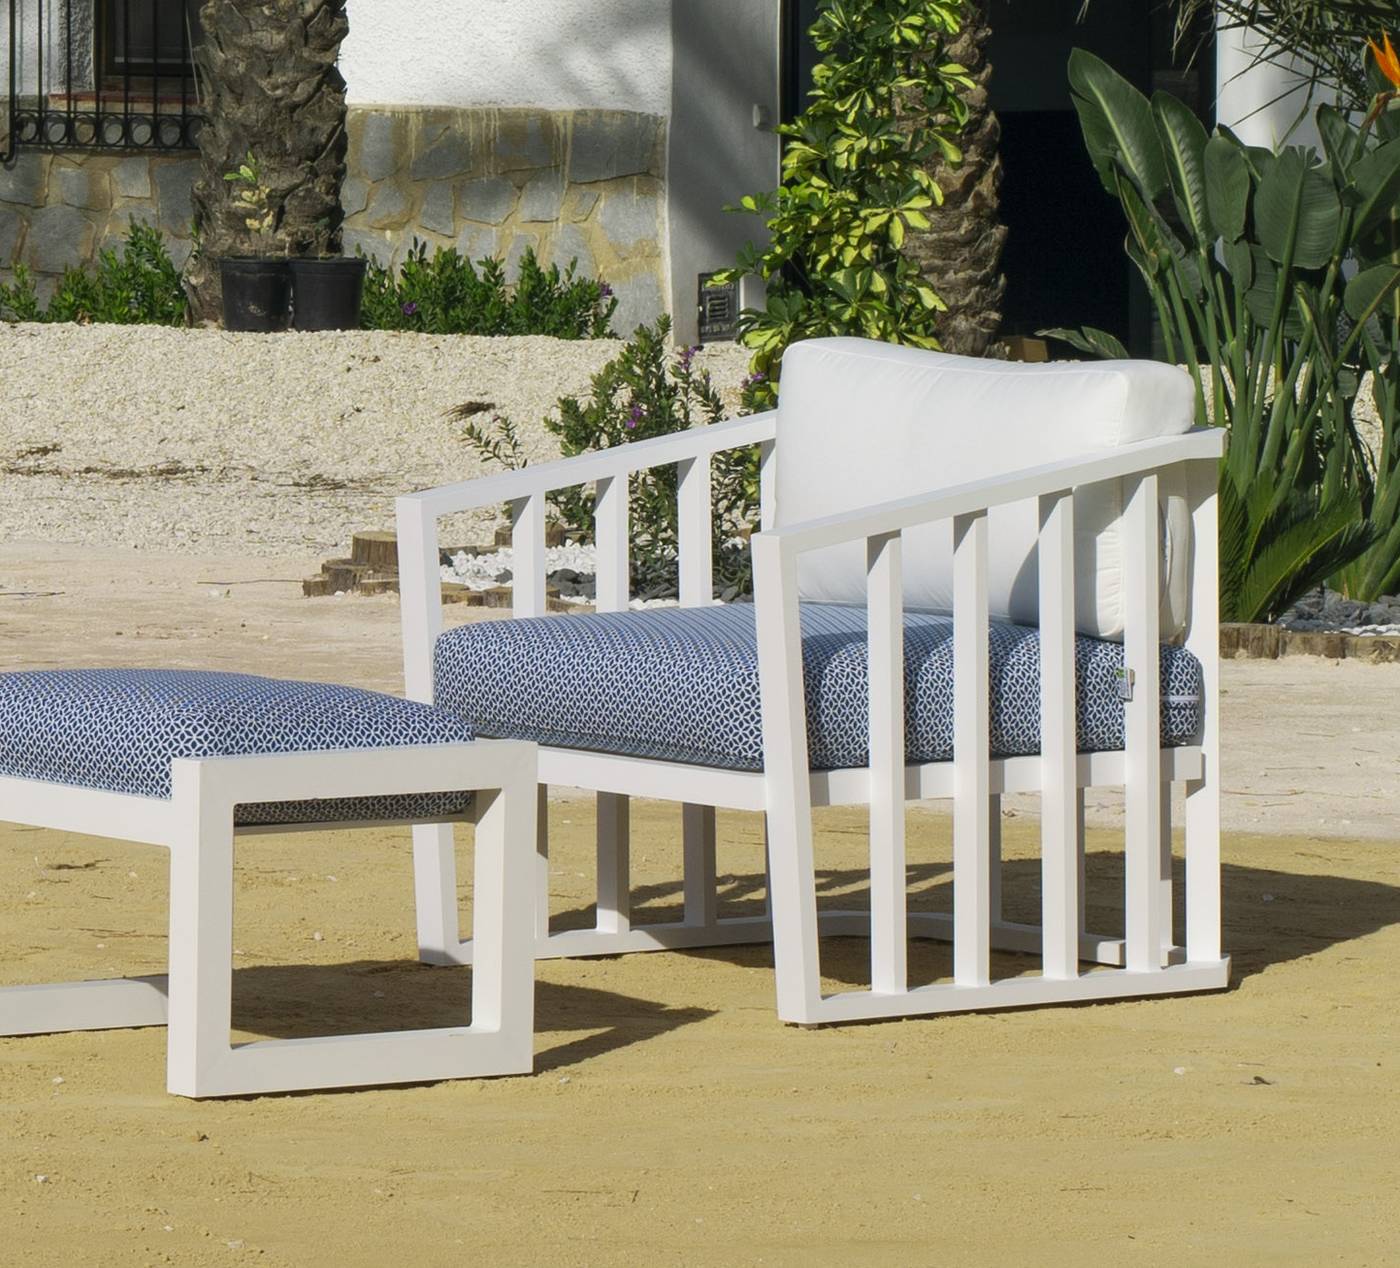 Set Aluminio Birmania-9 - Conjunto confort aluminio: 1 sofá 2 plazas + 2 sillones + 1 mesa de centro + 2 reposapiés + cojines. Disponible en color blanco o antracita.